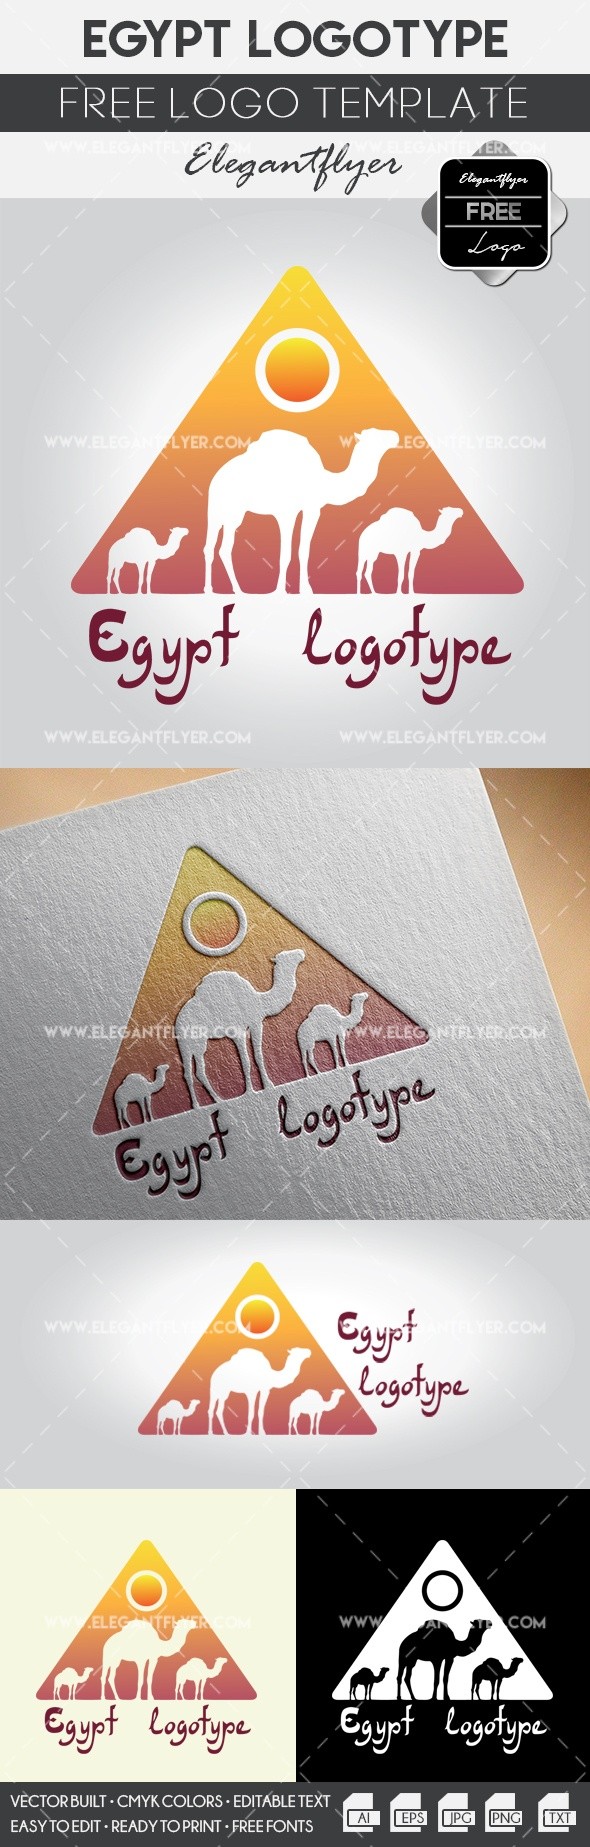 Egipt by ElegantFlyer